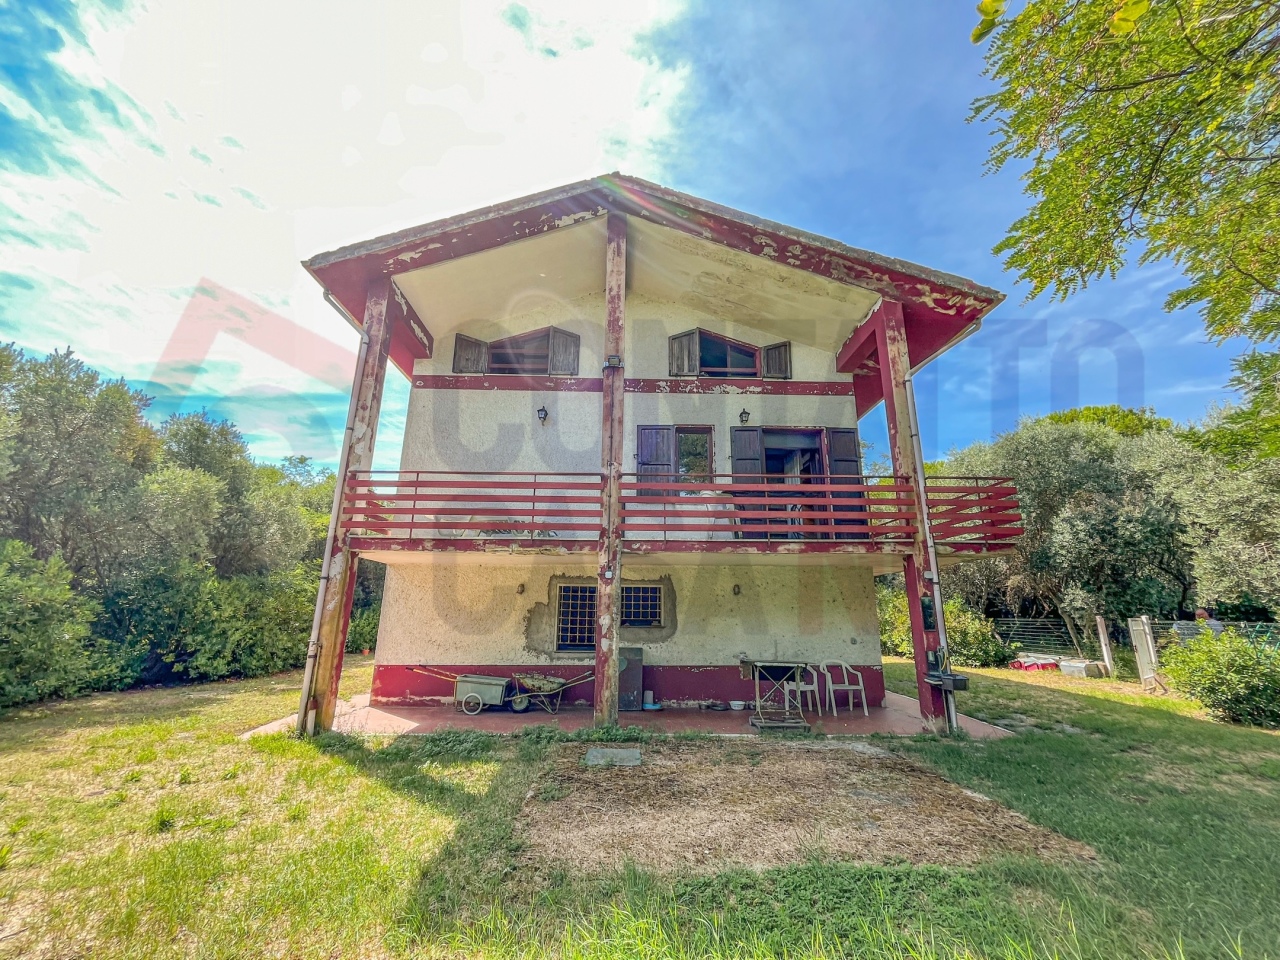 Rustico / Casale in vendita a Maiolati Spontini, 9999 locali, prezzo € 255.000 | PortaleAgenzieImmobiliari.it